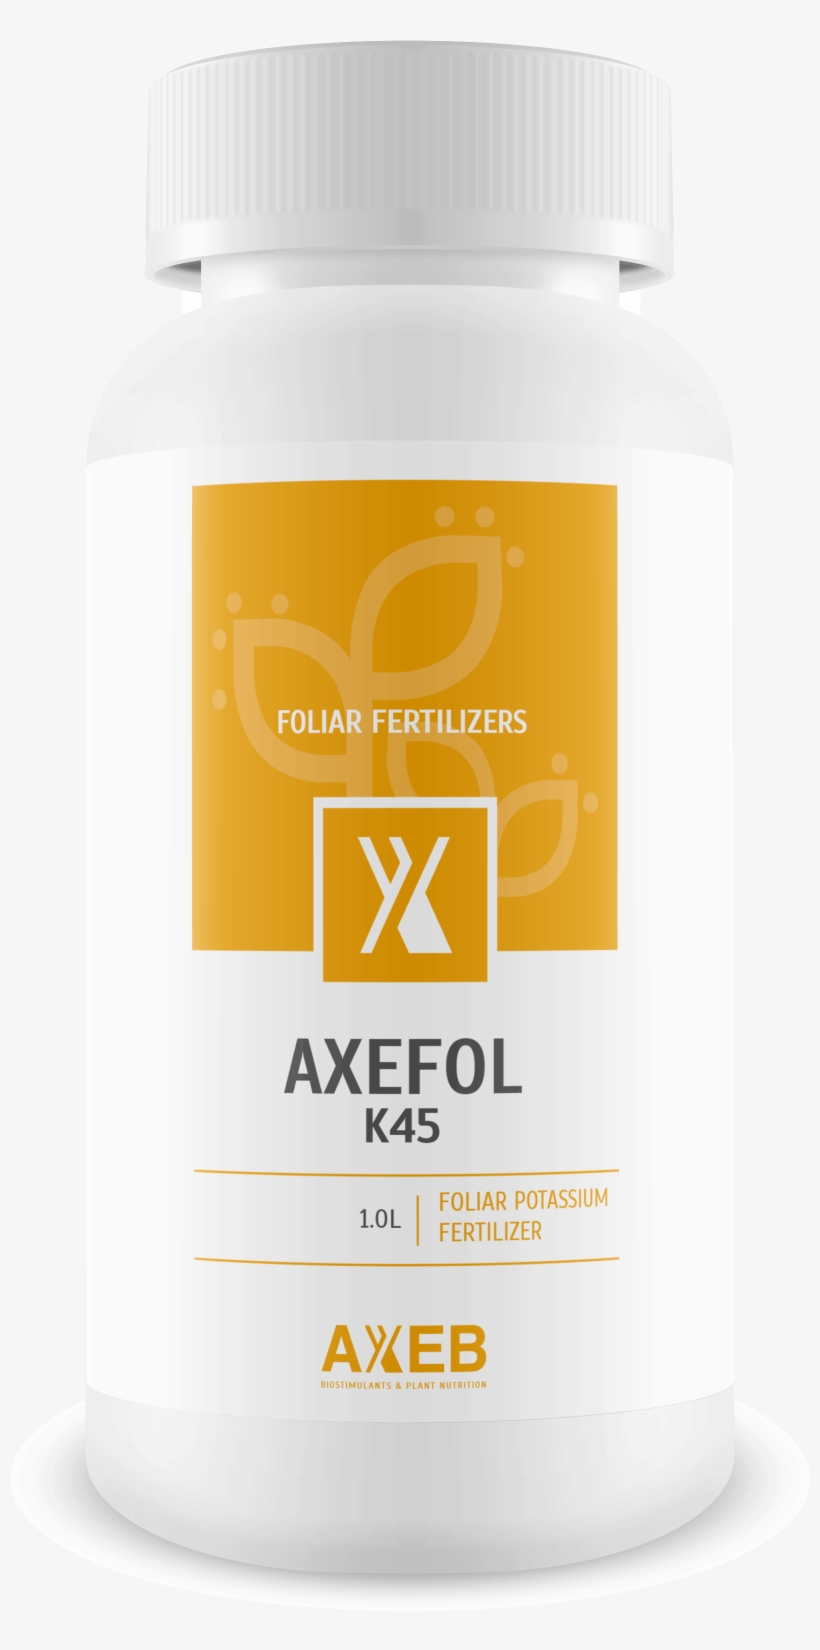 Foliar Fertilizers Biostimulants Specialized Fertilizers - Fertilizer, transparent png #3643833